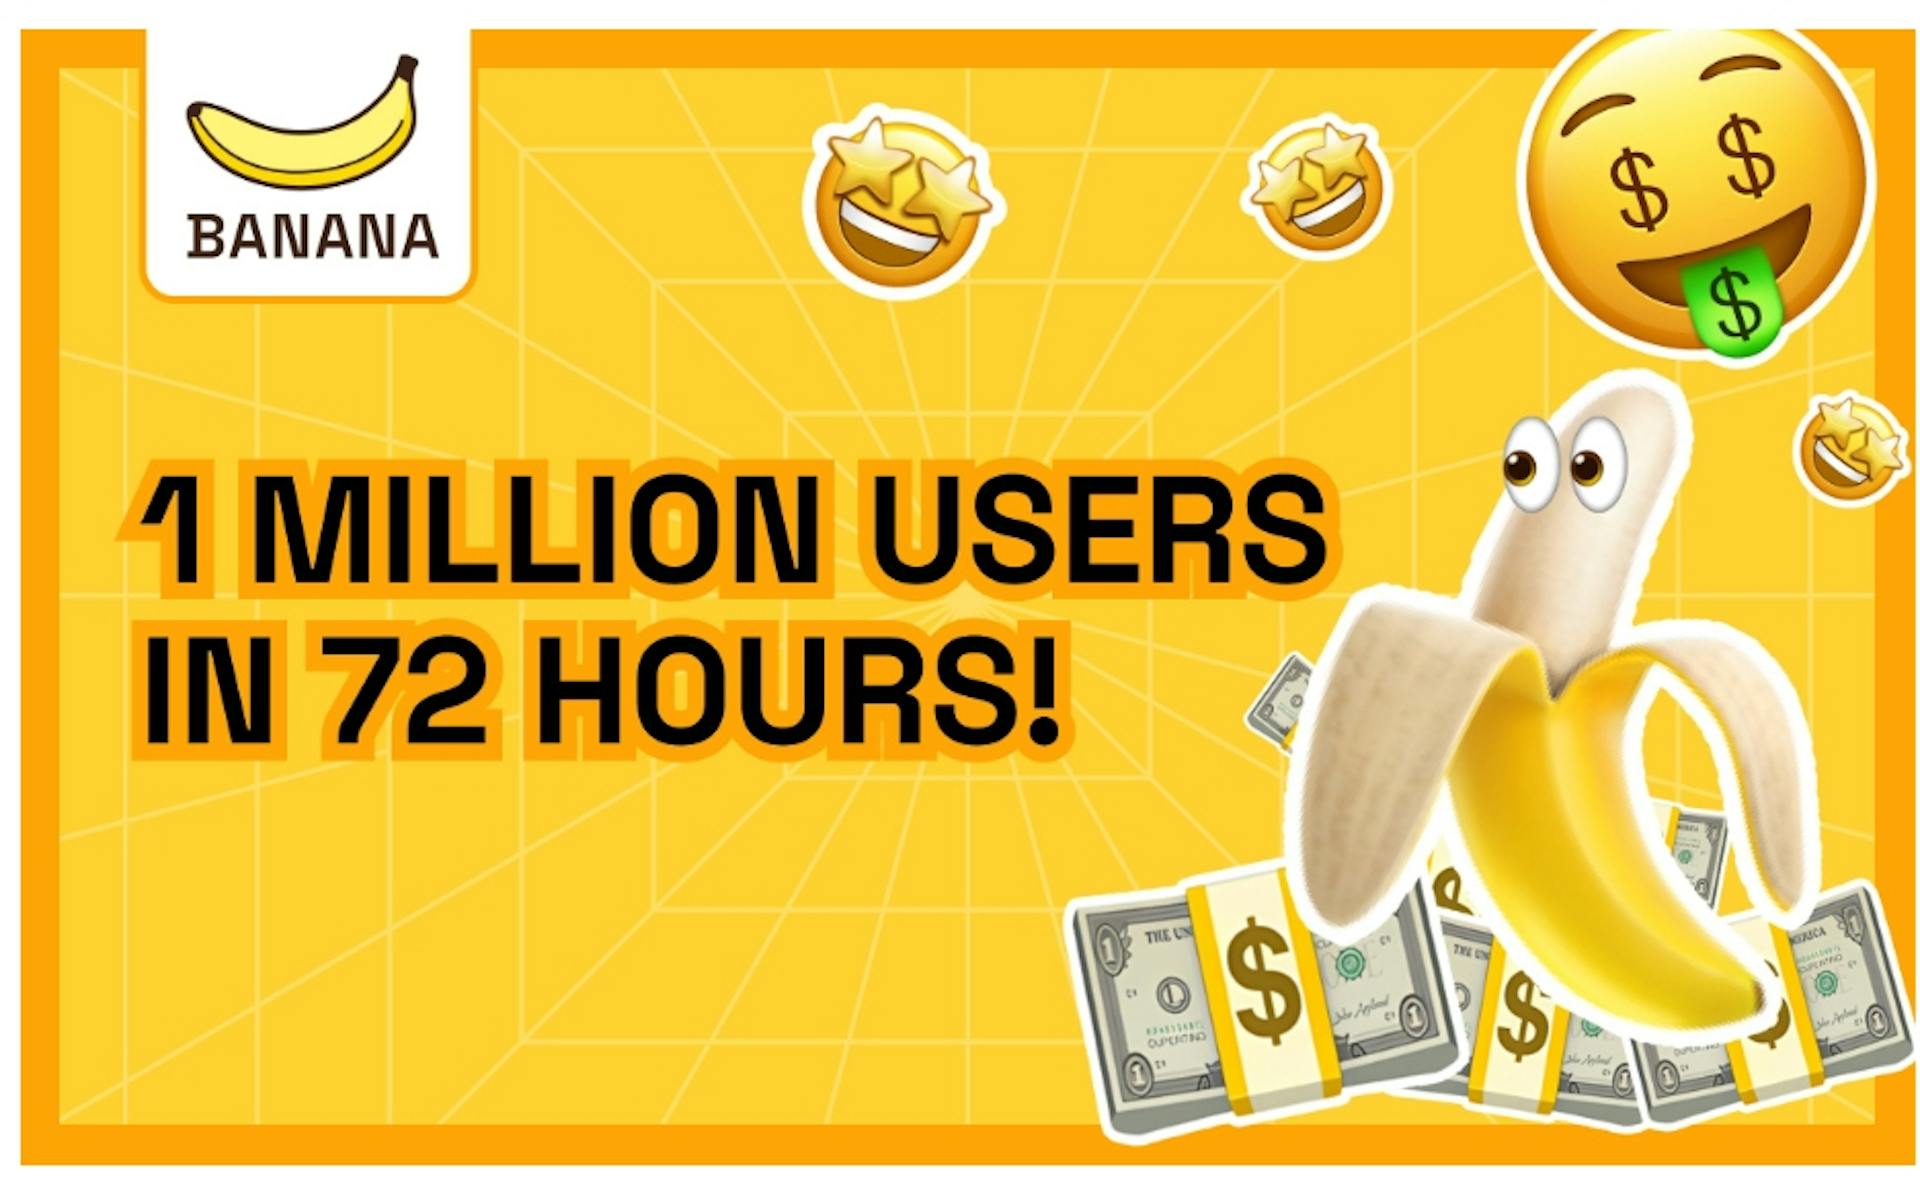 featured image - El juego TON 'BANANA' llega a 1 millón de usuarios en 72 horas